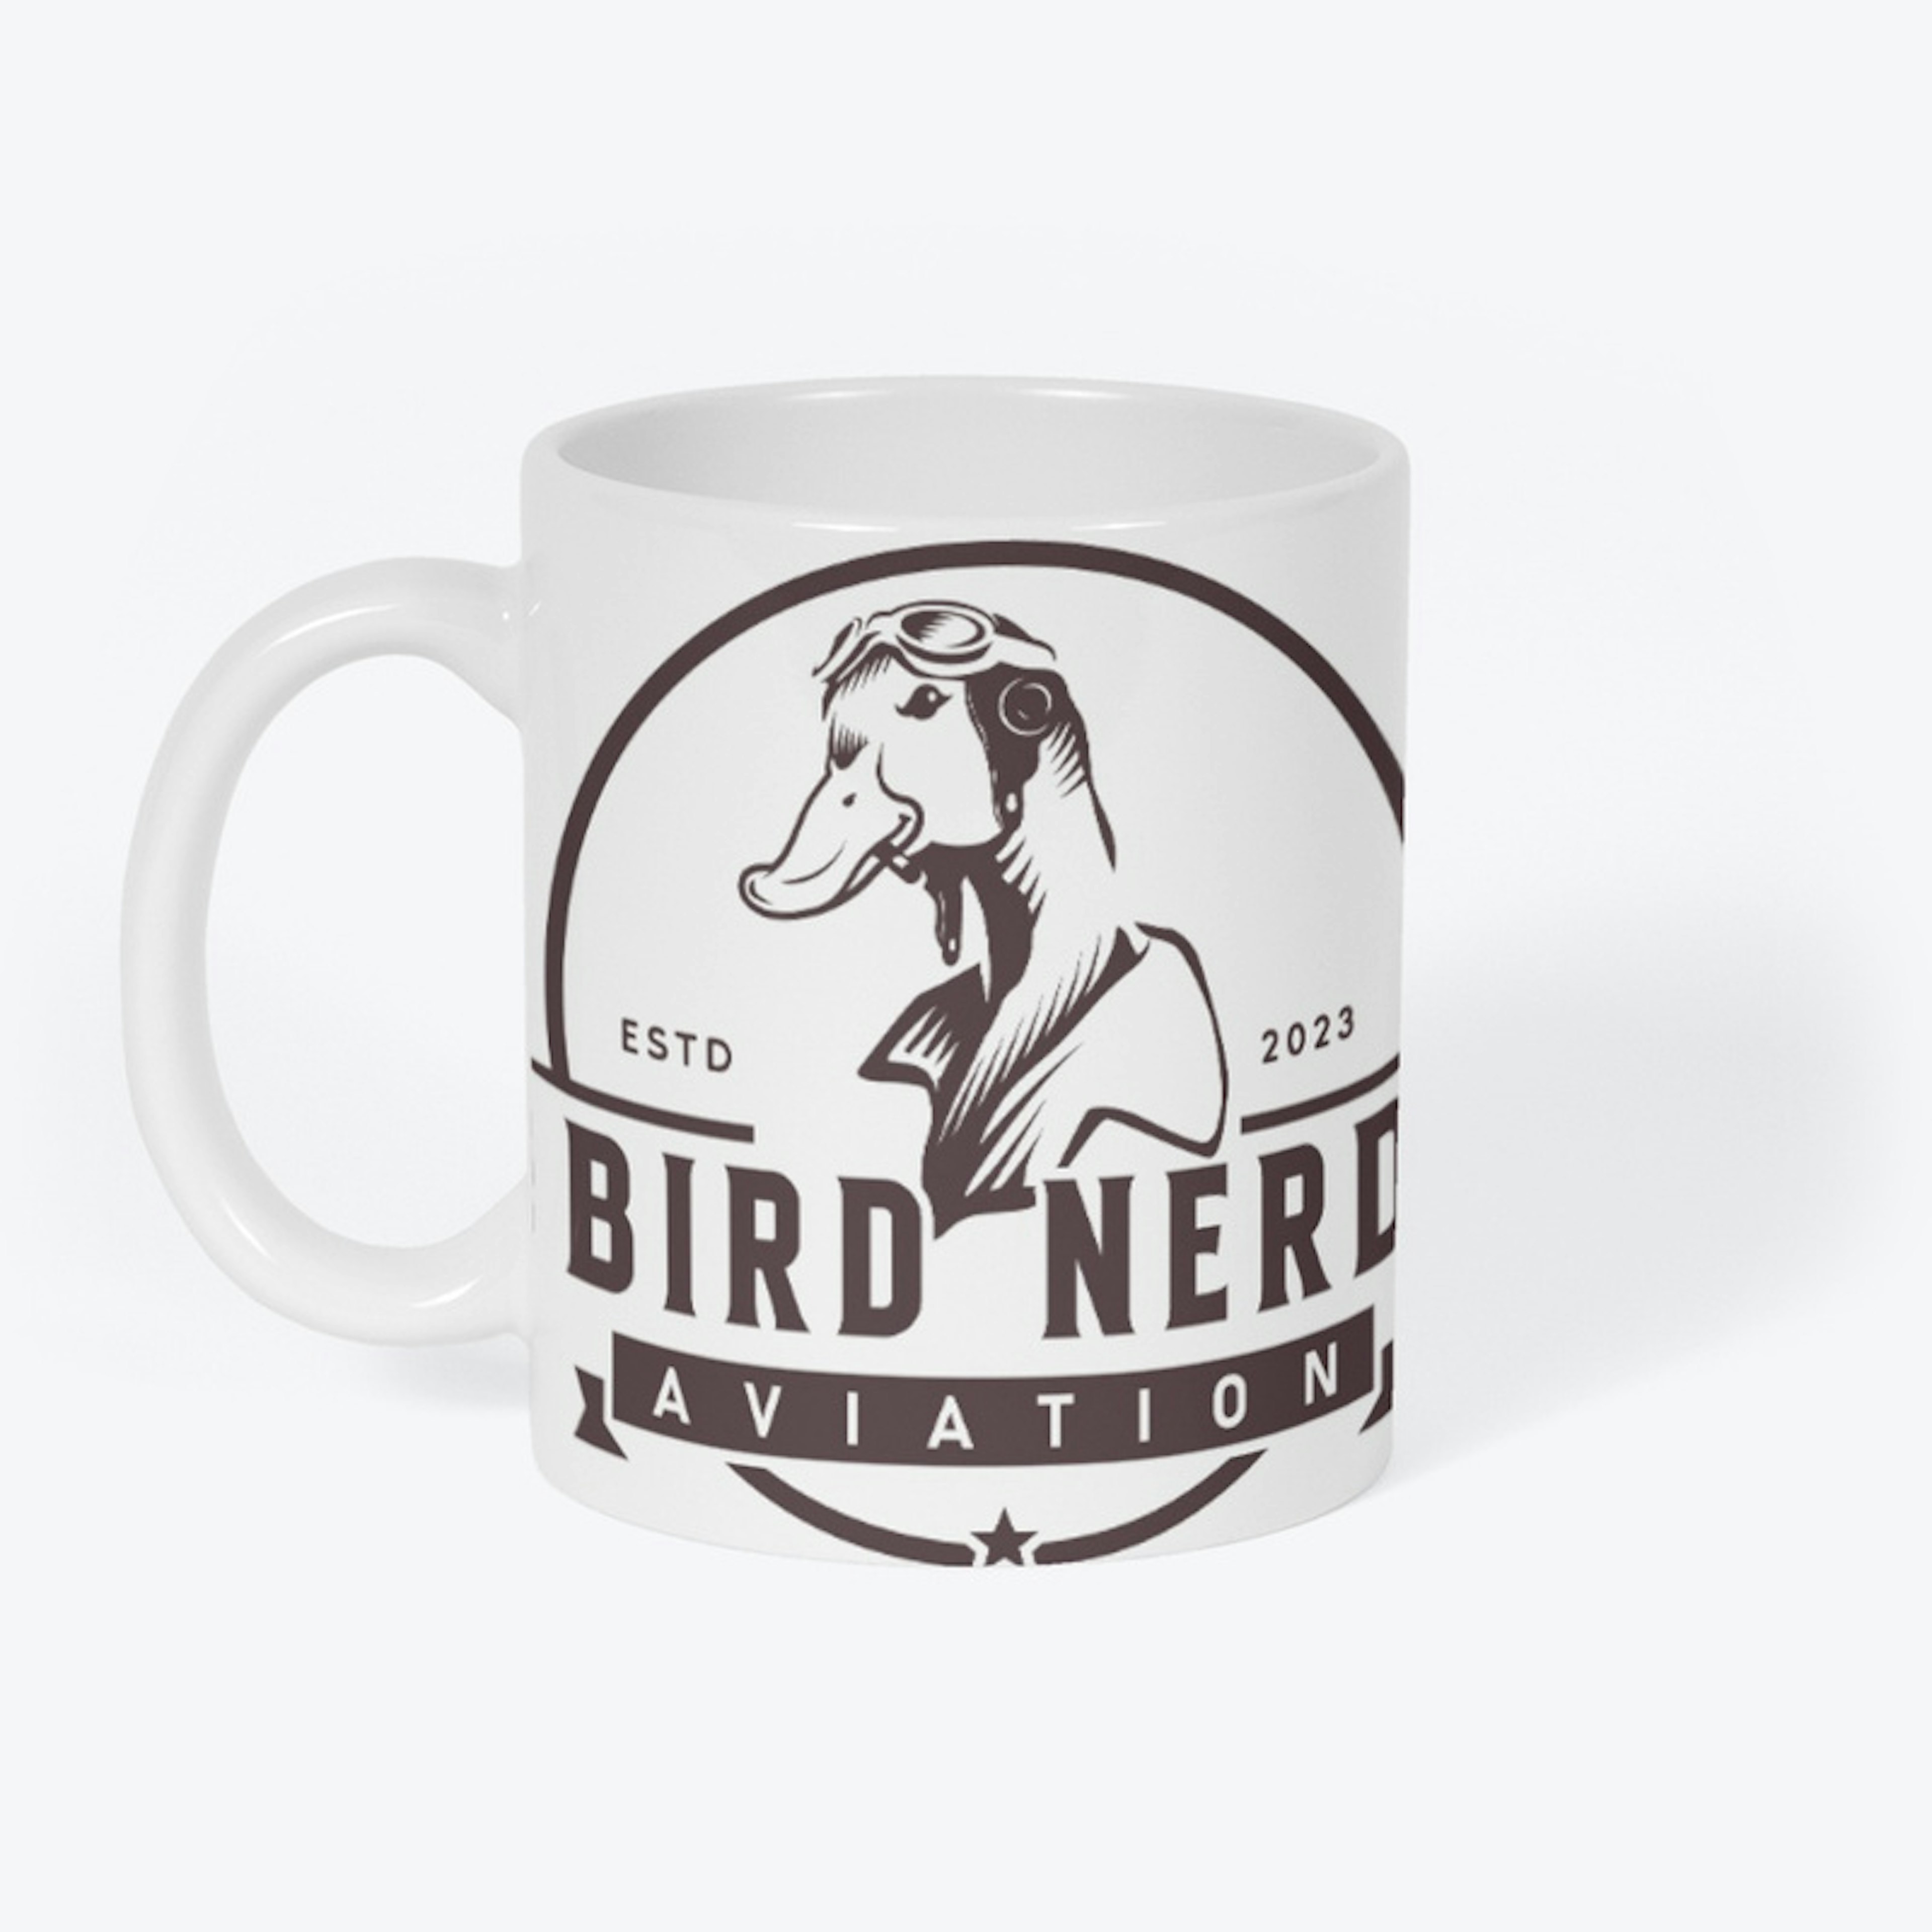 Classic Bird Nerd Brand